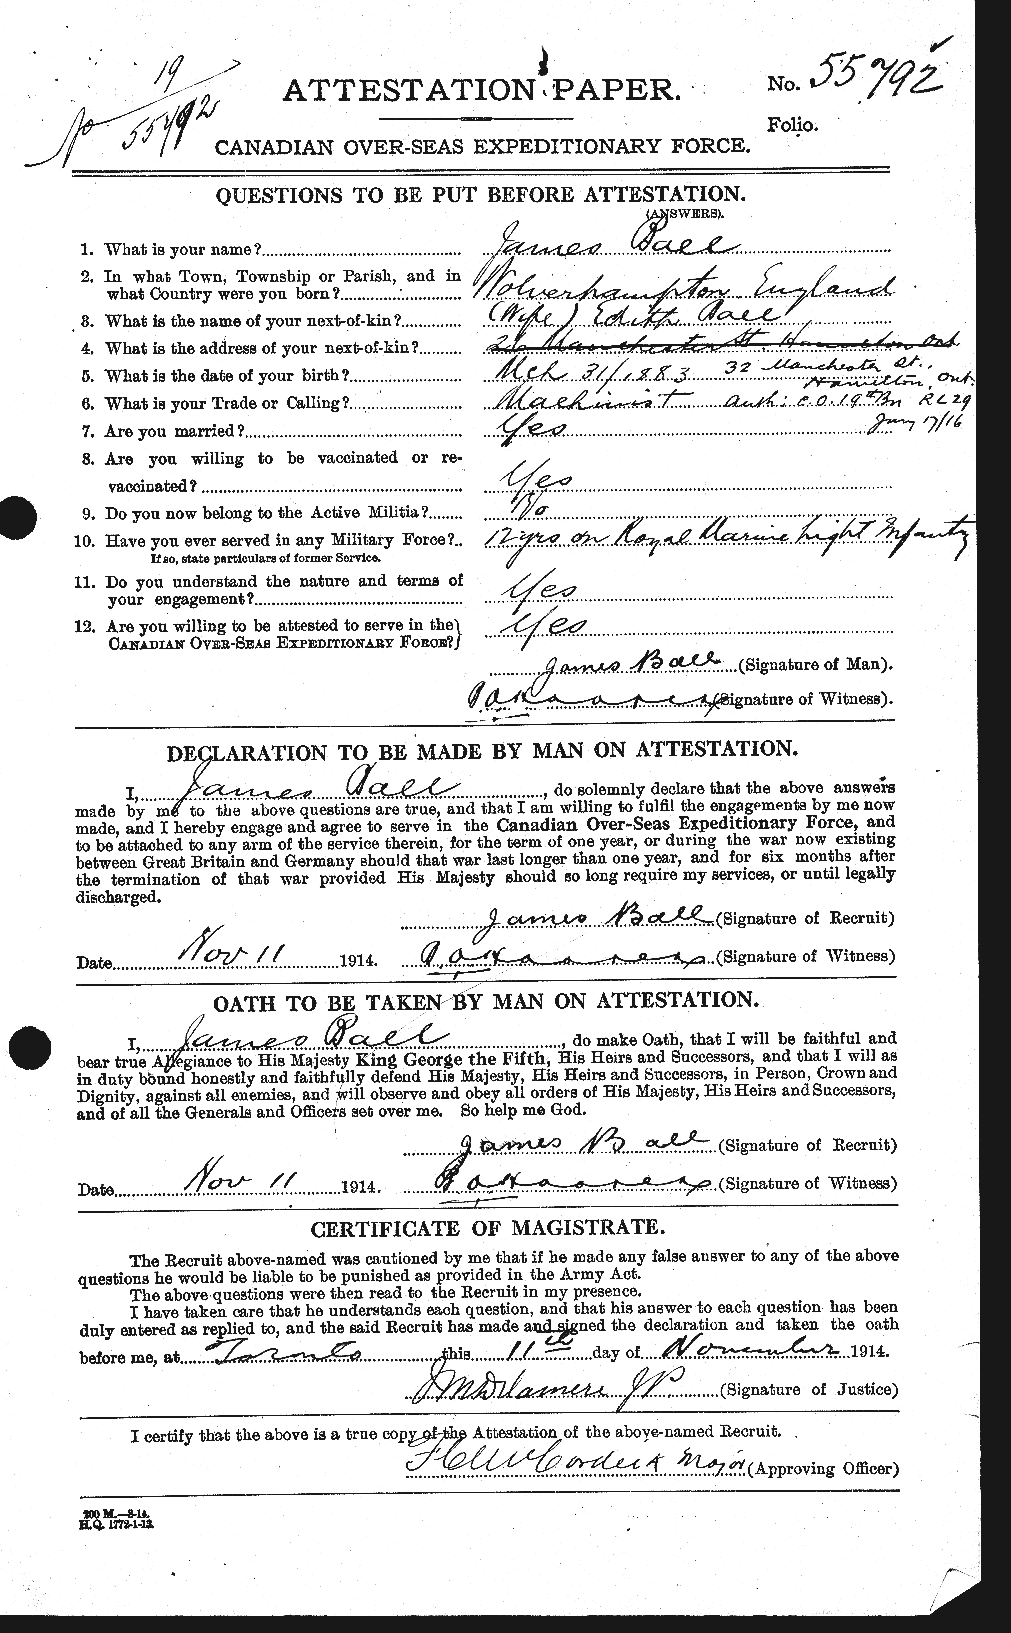 Dossiers du Personnel de la Première Guerre mondiale - CEC 225701a